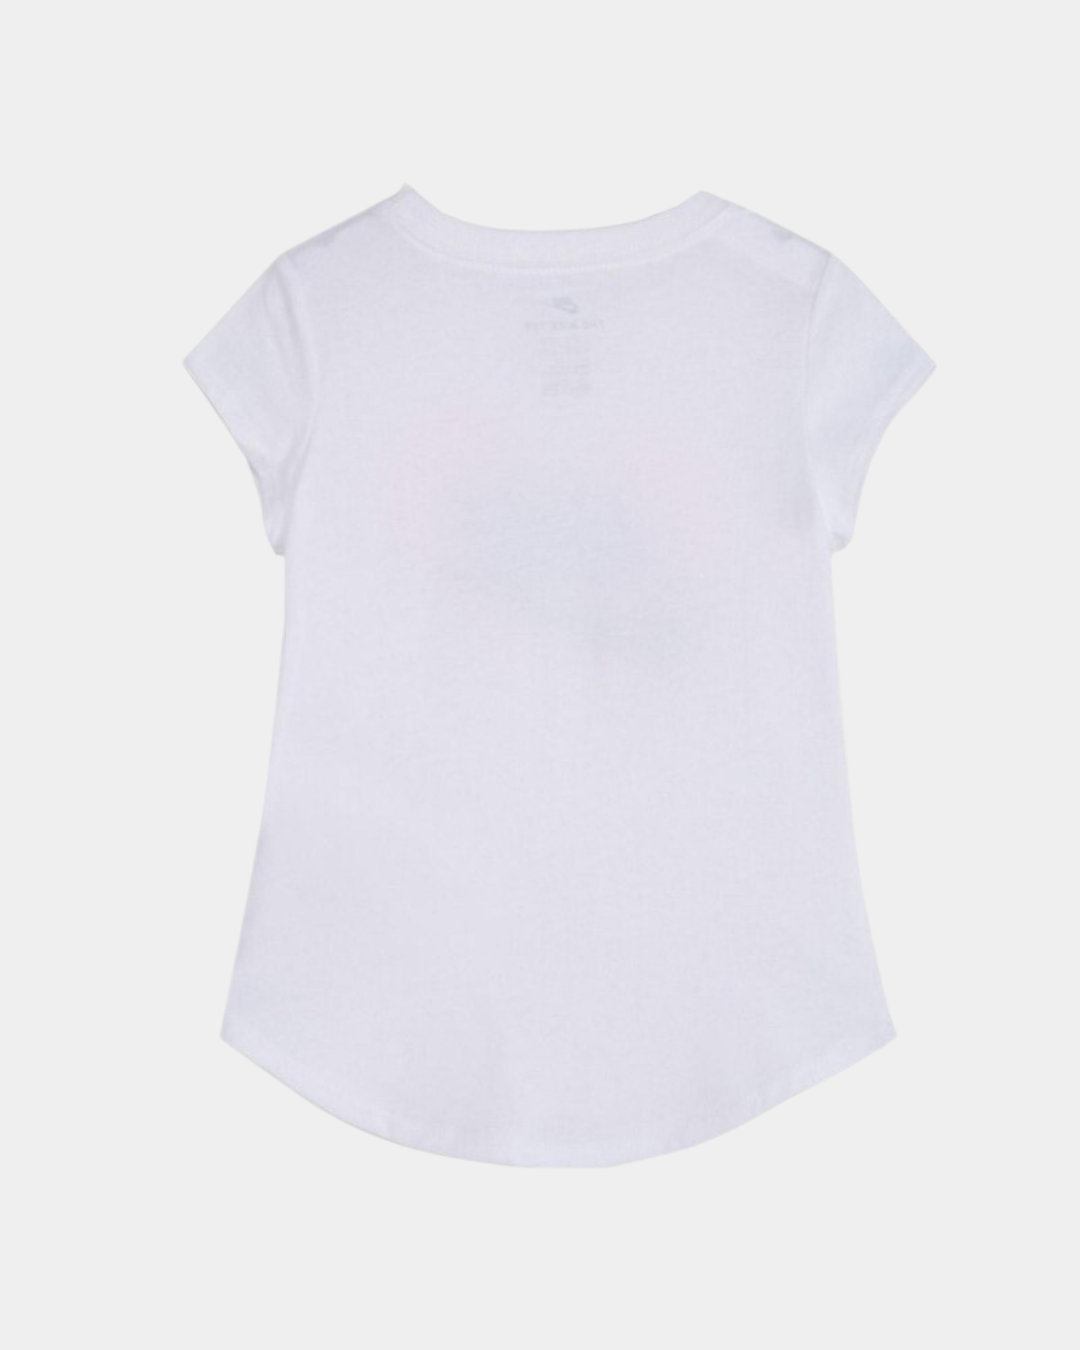 T-shirt Nike Bambini - Bianco/Rosa/Blu